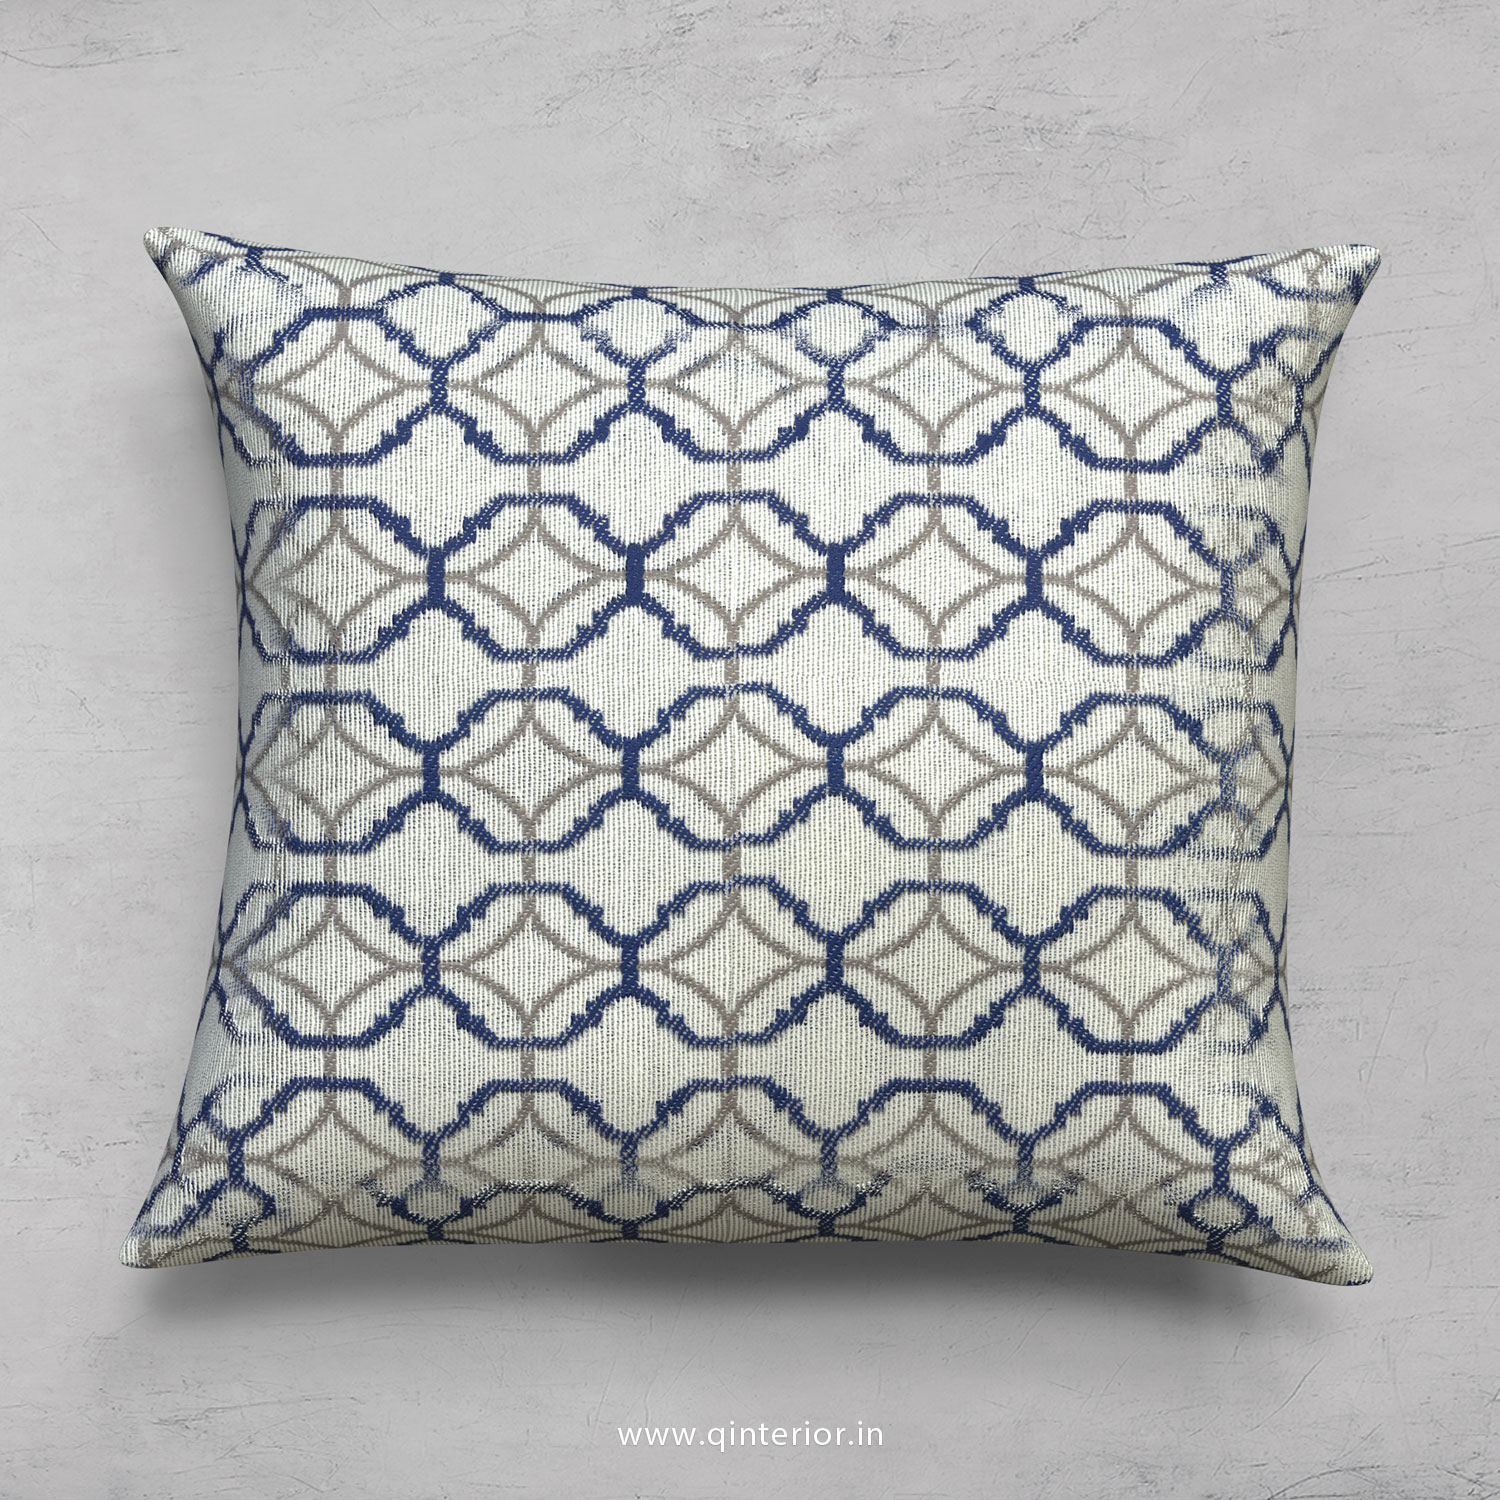 Cushion With Cushion Cover in Jacquard- CUS001 JQ19